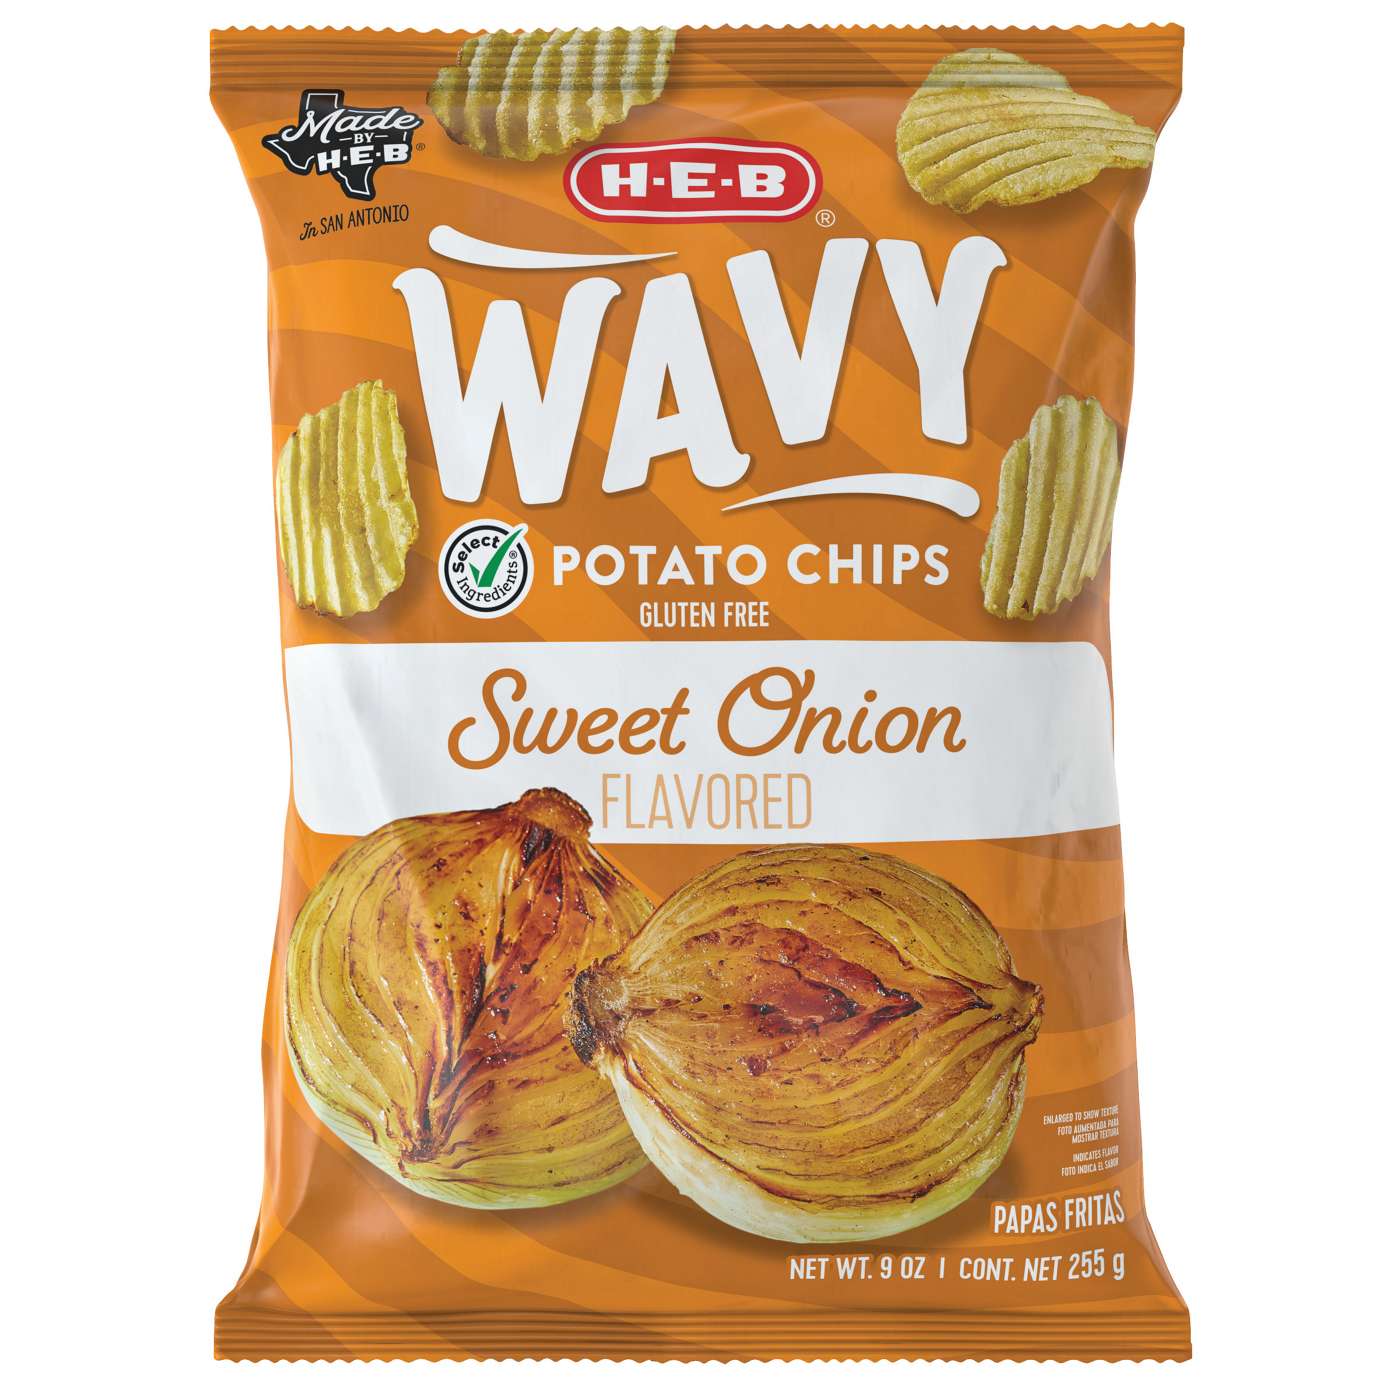 H-E-B Wavy Potato Chips - Sweet Onion; image 1 of 2